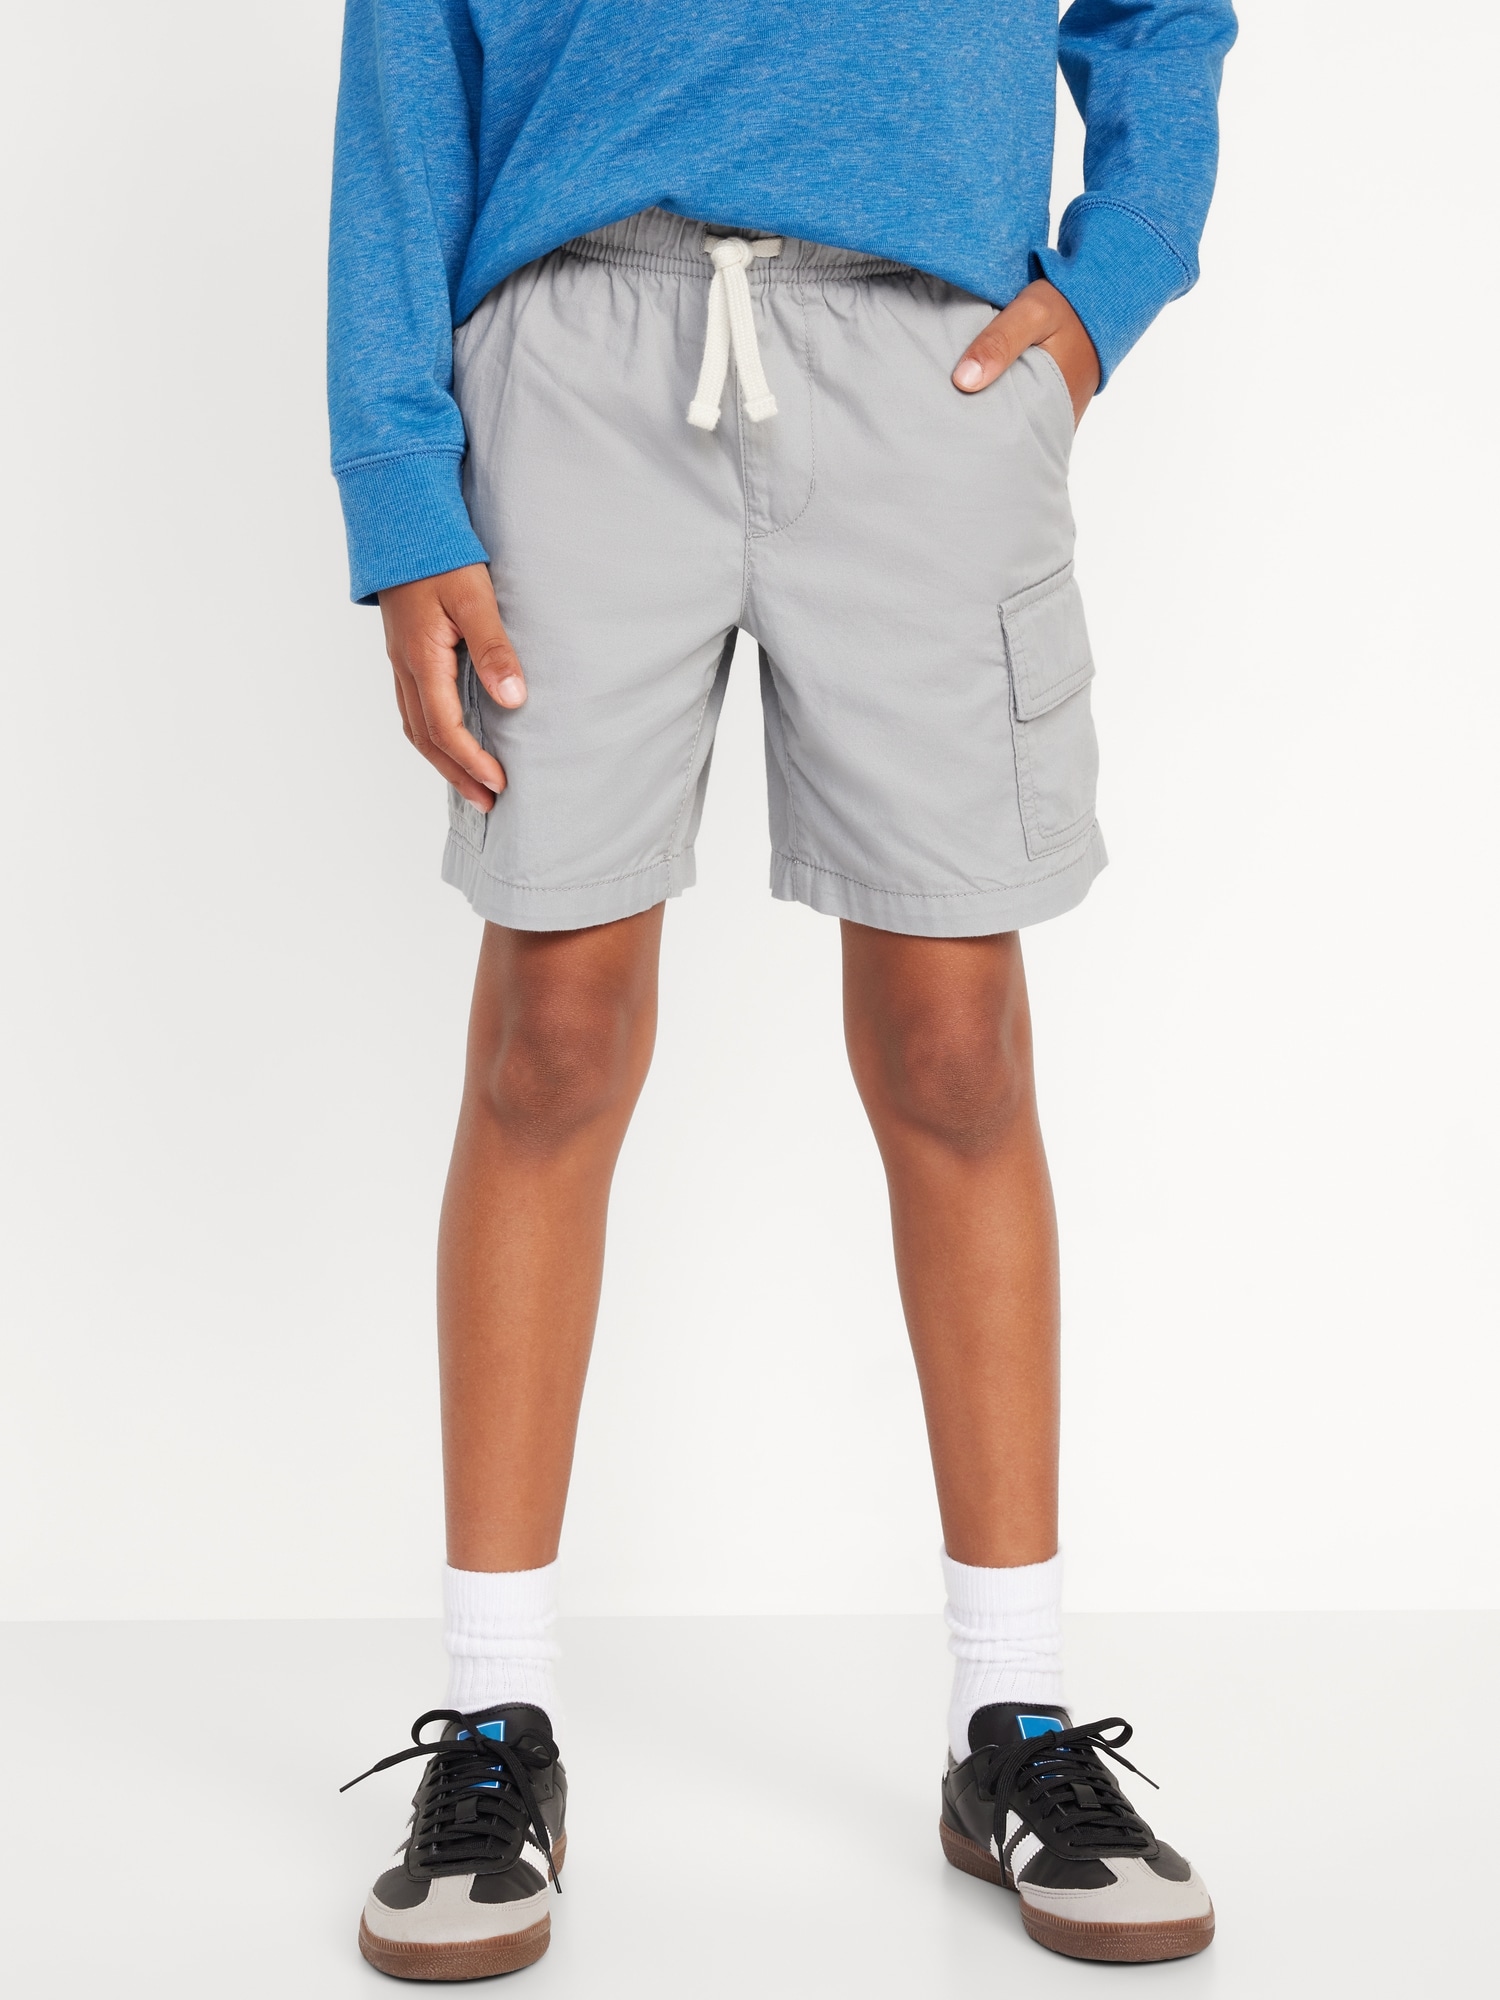 OGC Chino Jogger Shorts for Boys (At Knee)